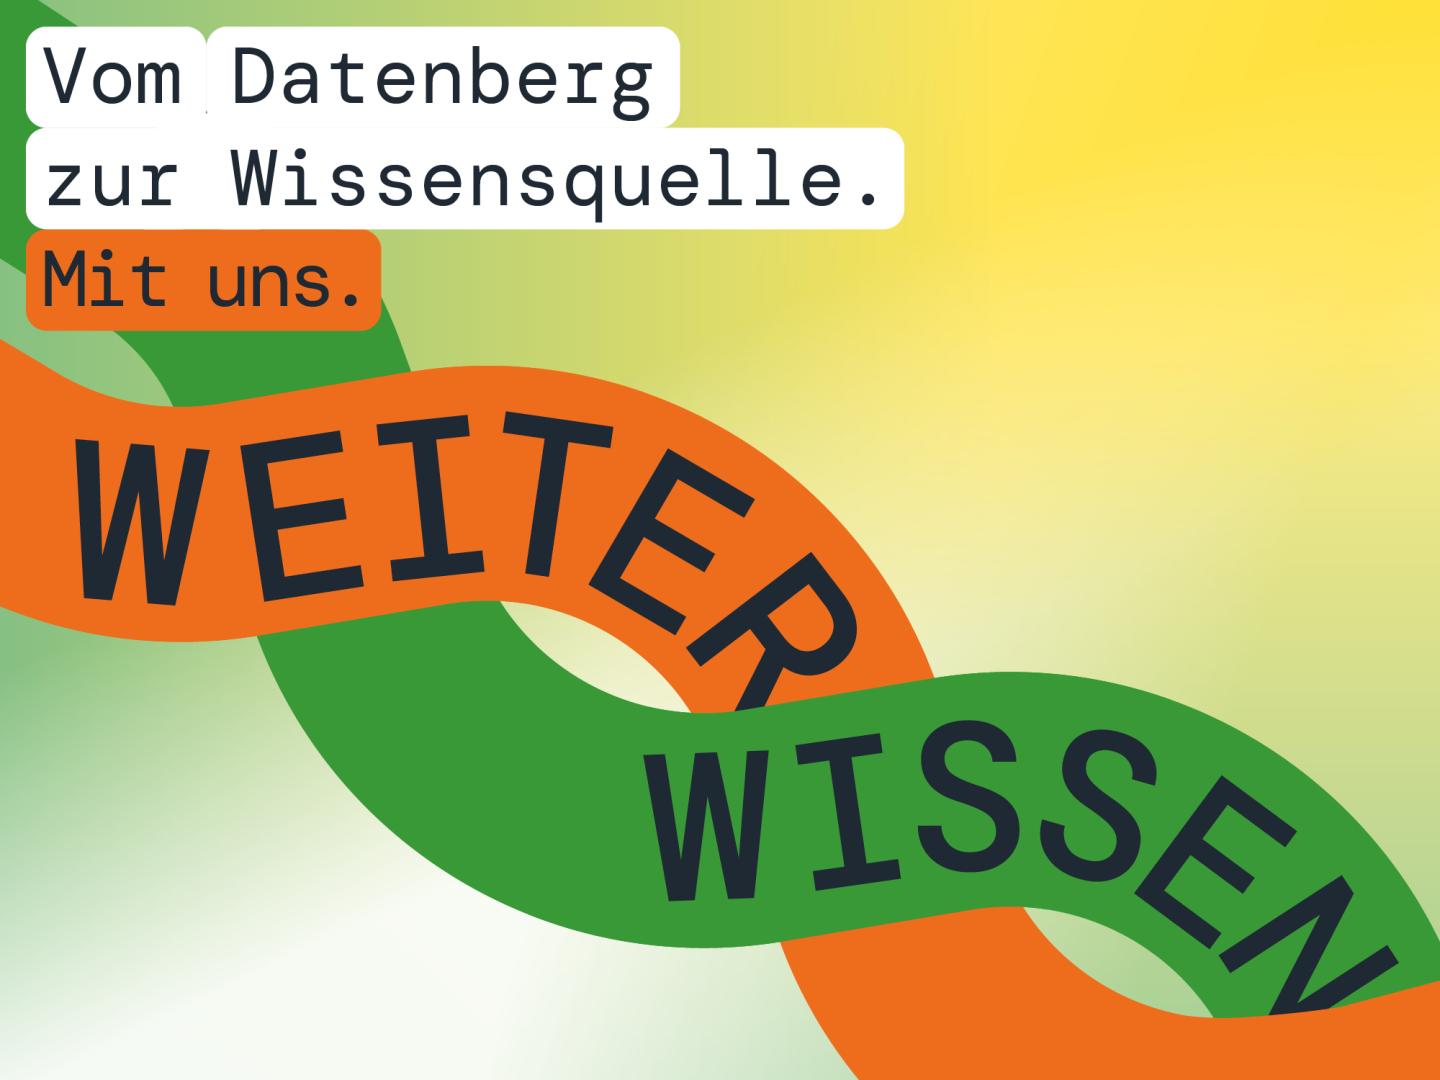 Grafik der kampagne "Weiter wissen" mit Text: Vom Datenberg zur Wissensquelle. Mit uns.